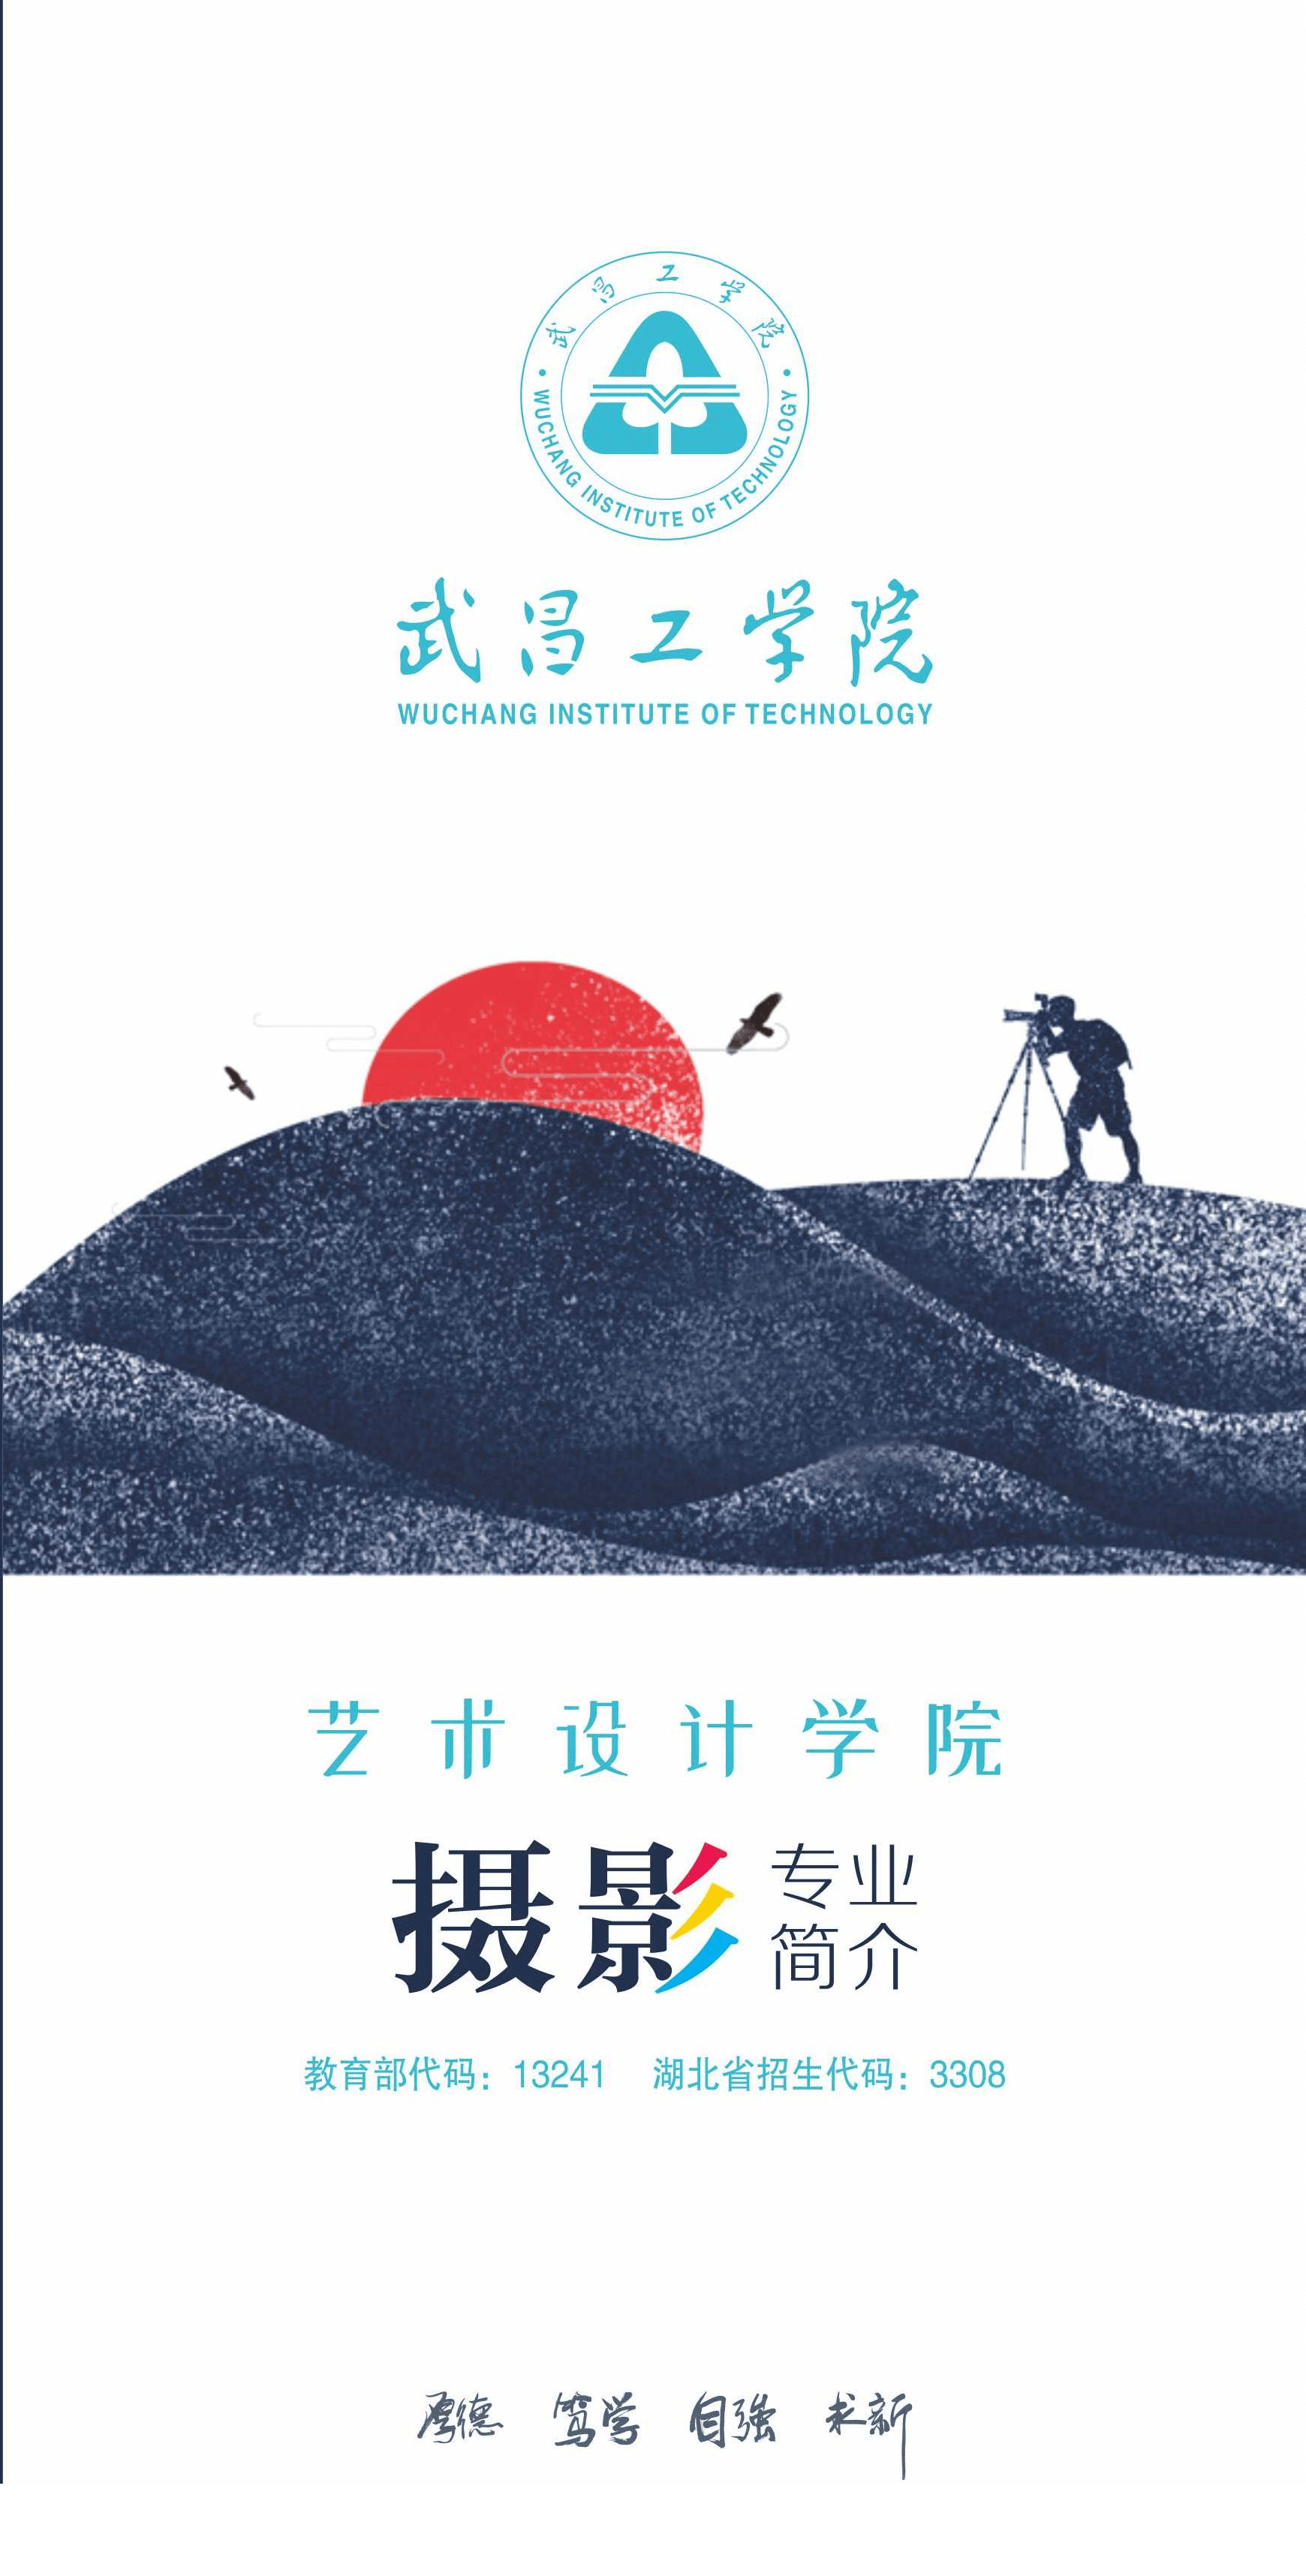 武昌工学院2020年摄影专业报考指南_00.png